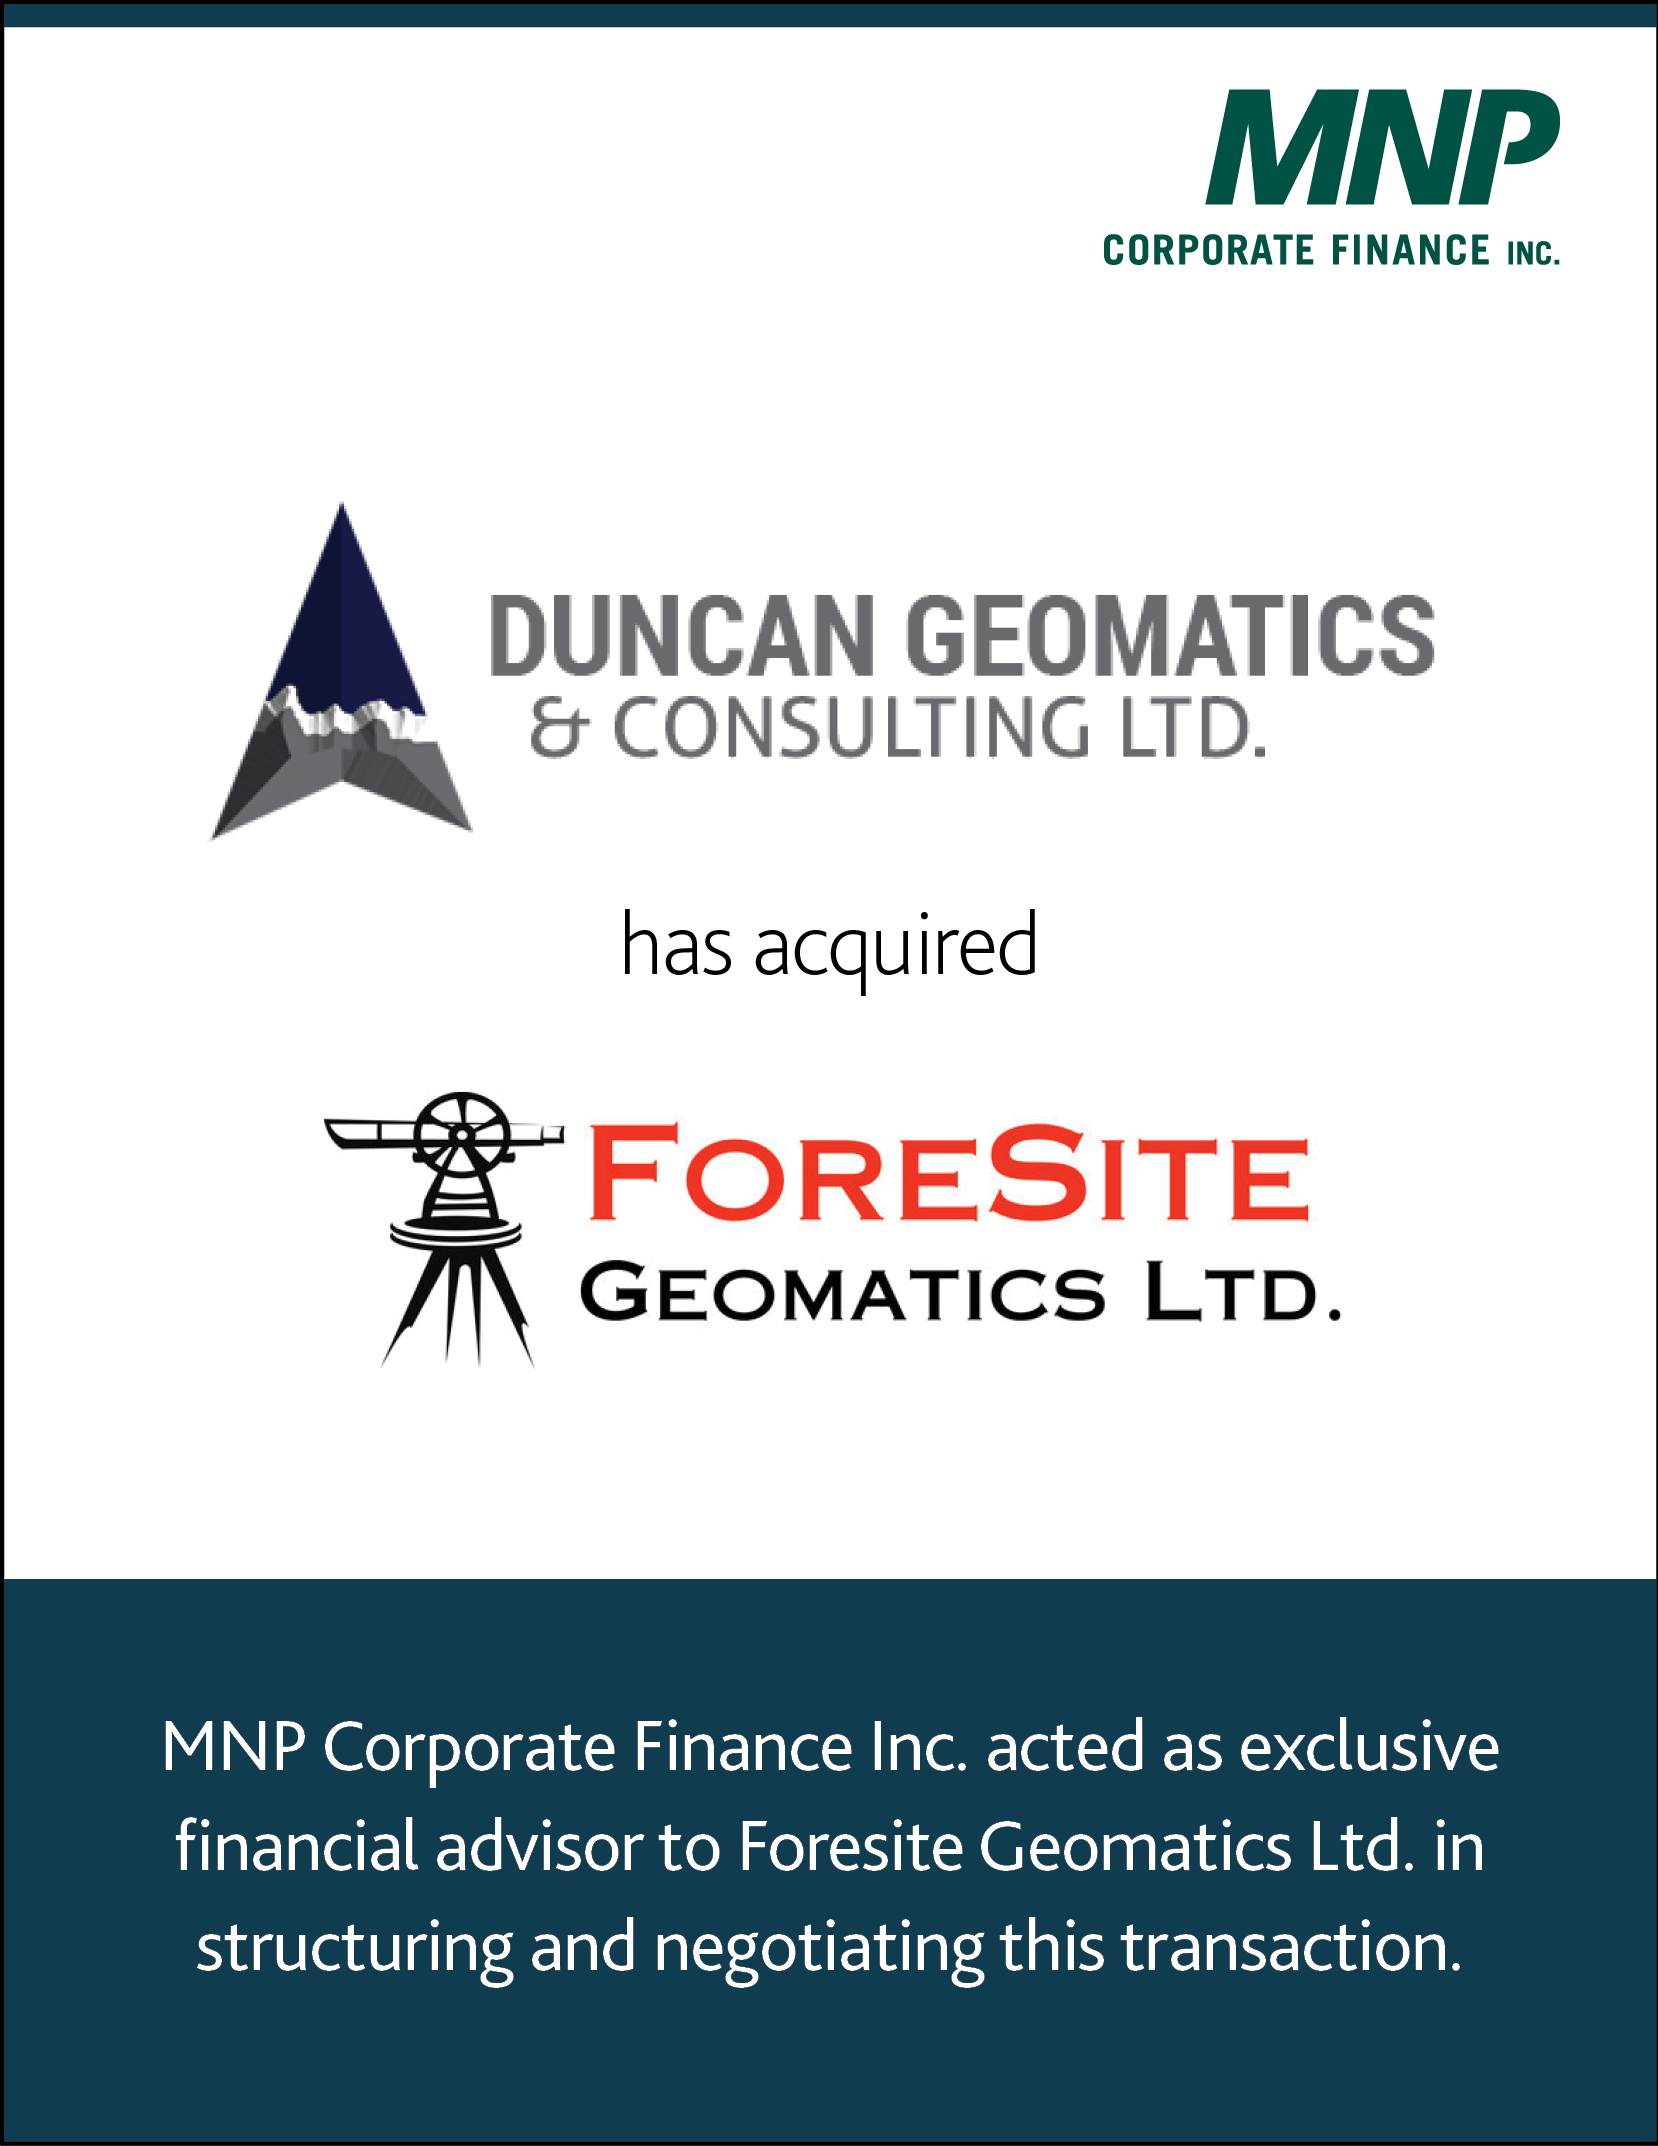 Duncan Geomatics & Consulting LTD has acquired Foresite Geomatics LTD